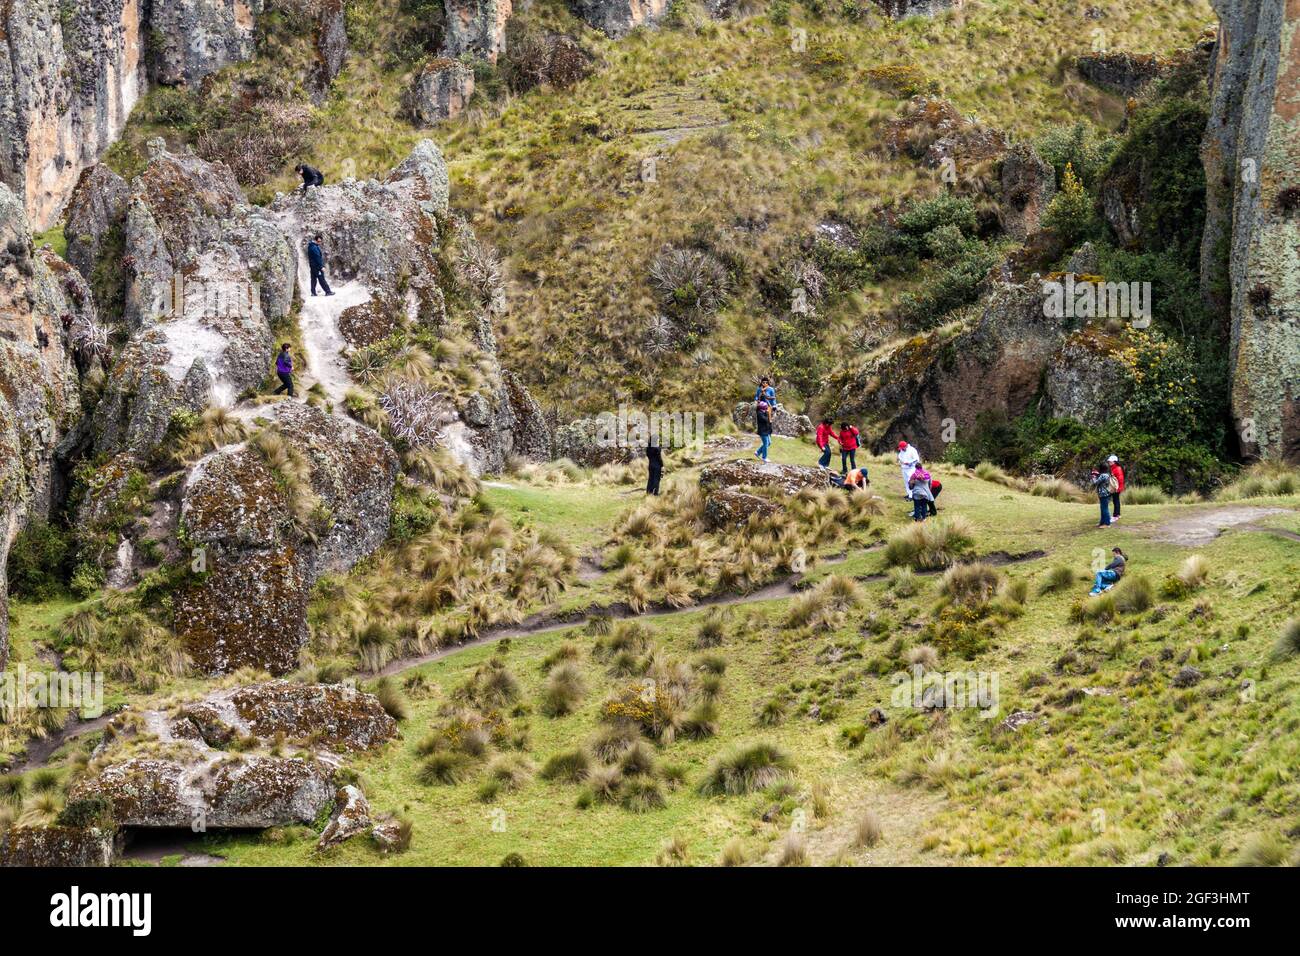 CAJAMARCA, PERÙ - 8 GIUGNO 2015: I turisti visitano Los Frailones (Monaci di pietra), formazioni rocciose vicino Cajamarca, Perù. Foto Stock